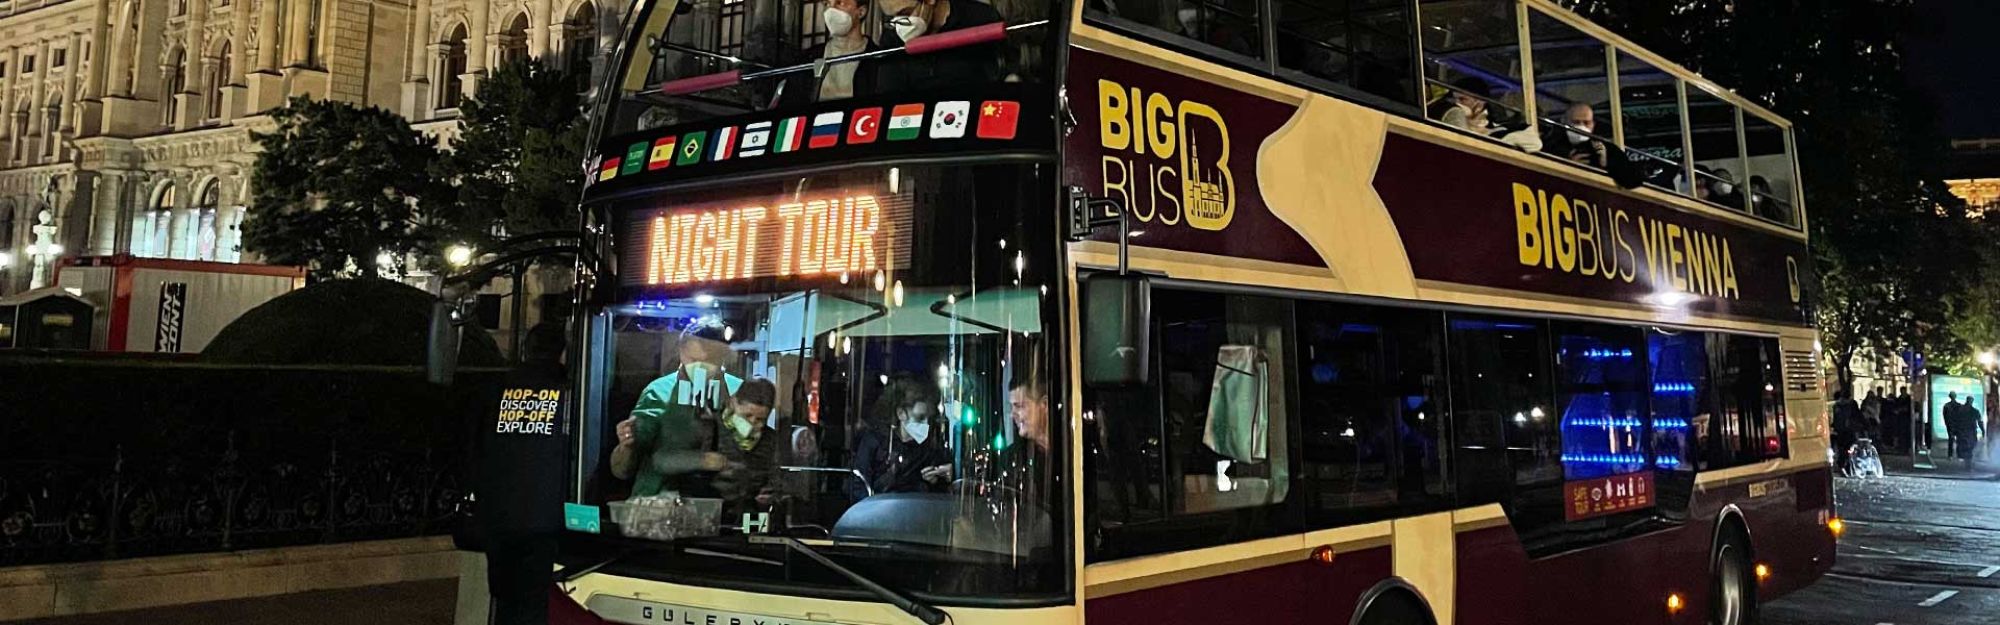 big bus vienna evening tour